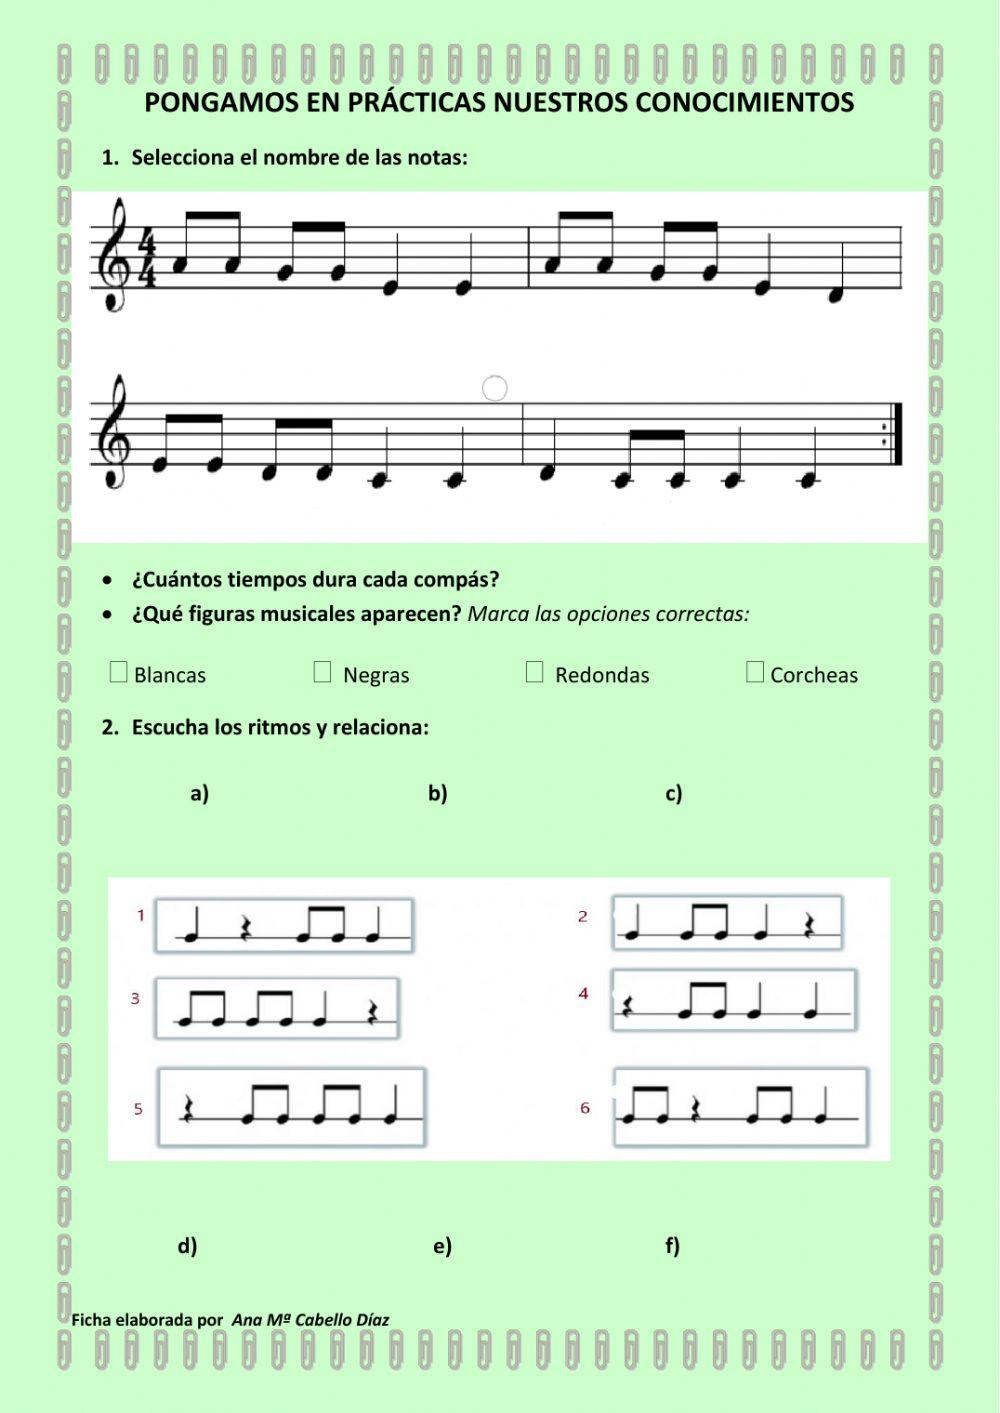 Repaso notación, figuras musicales y dictado rítmico